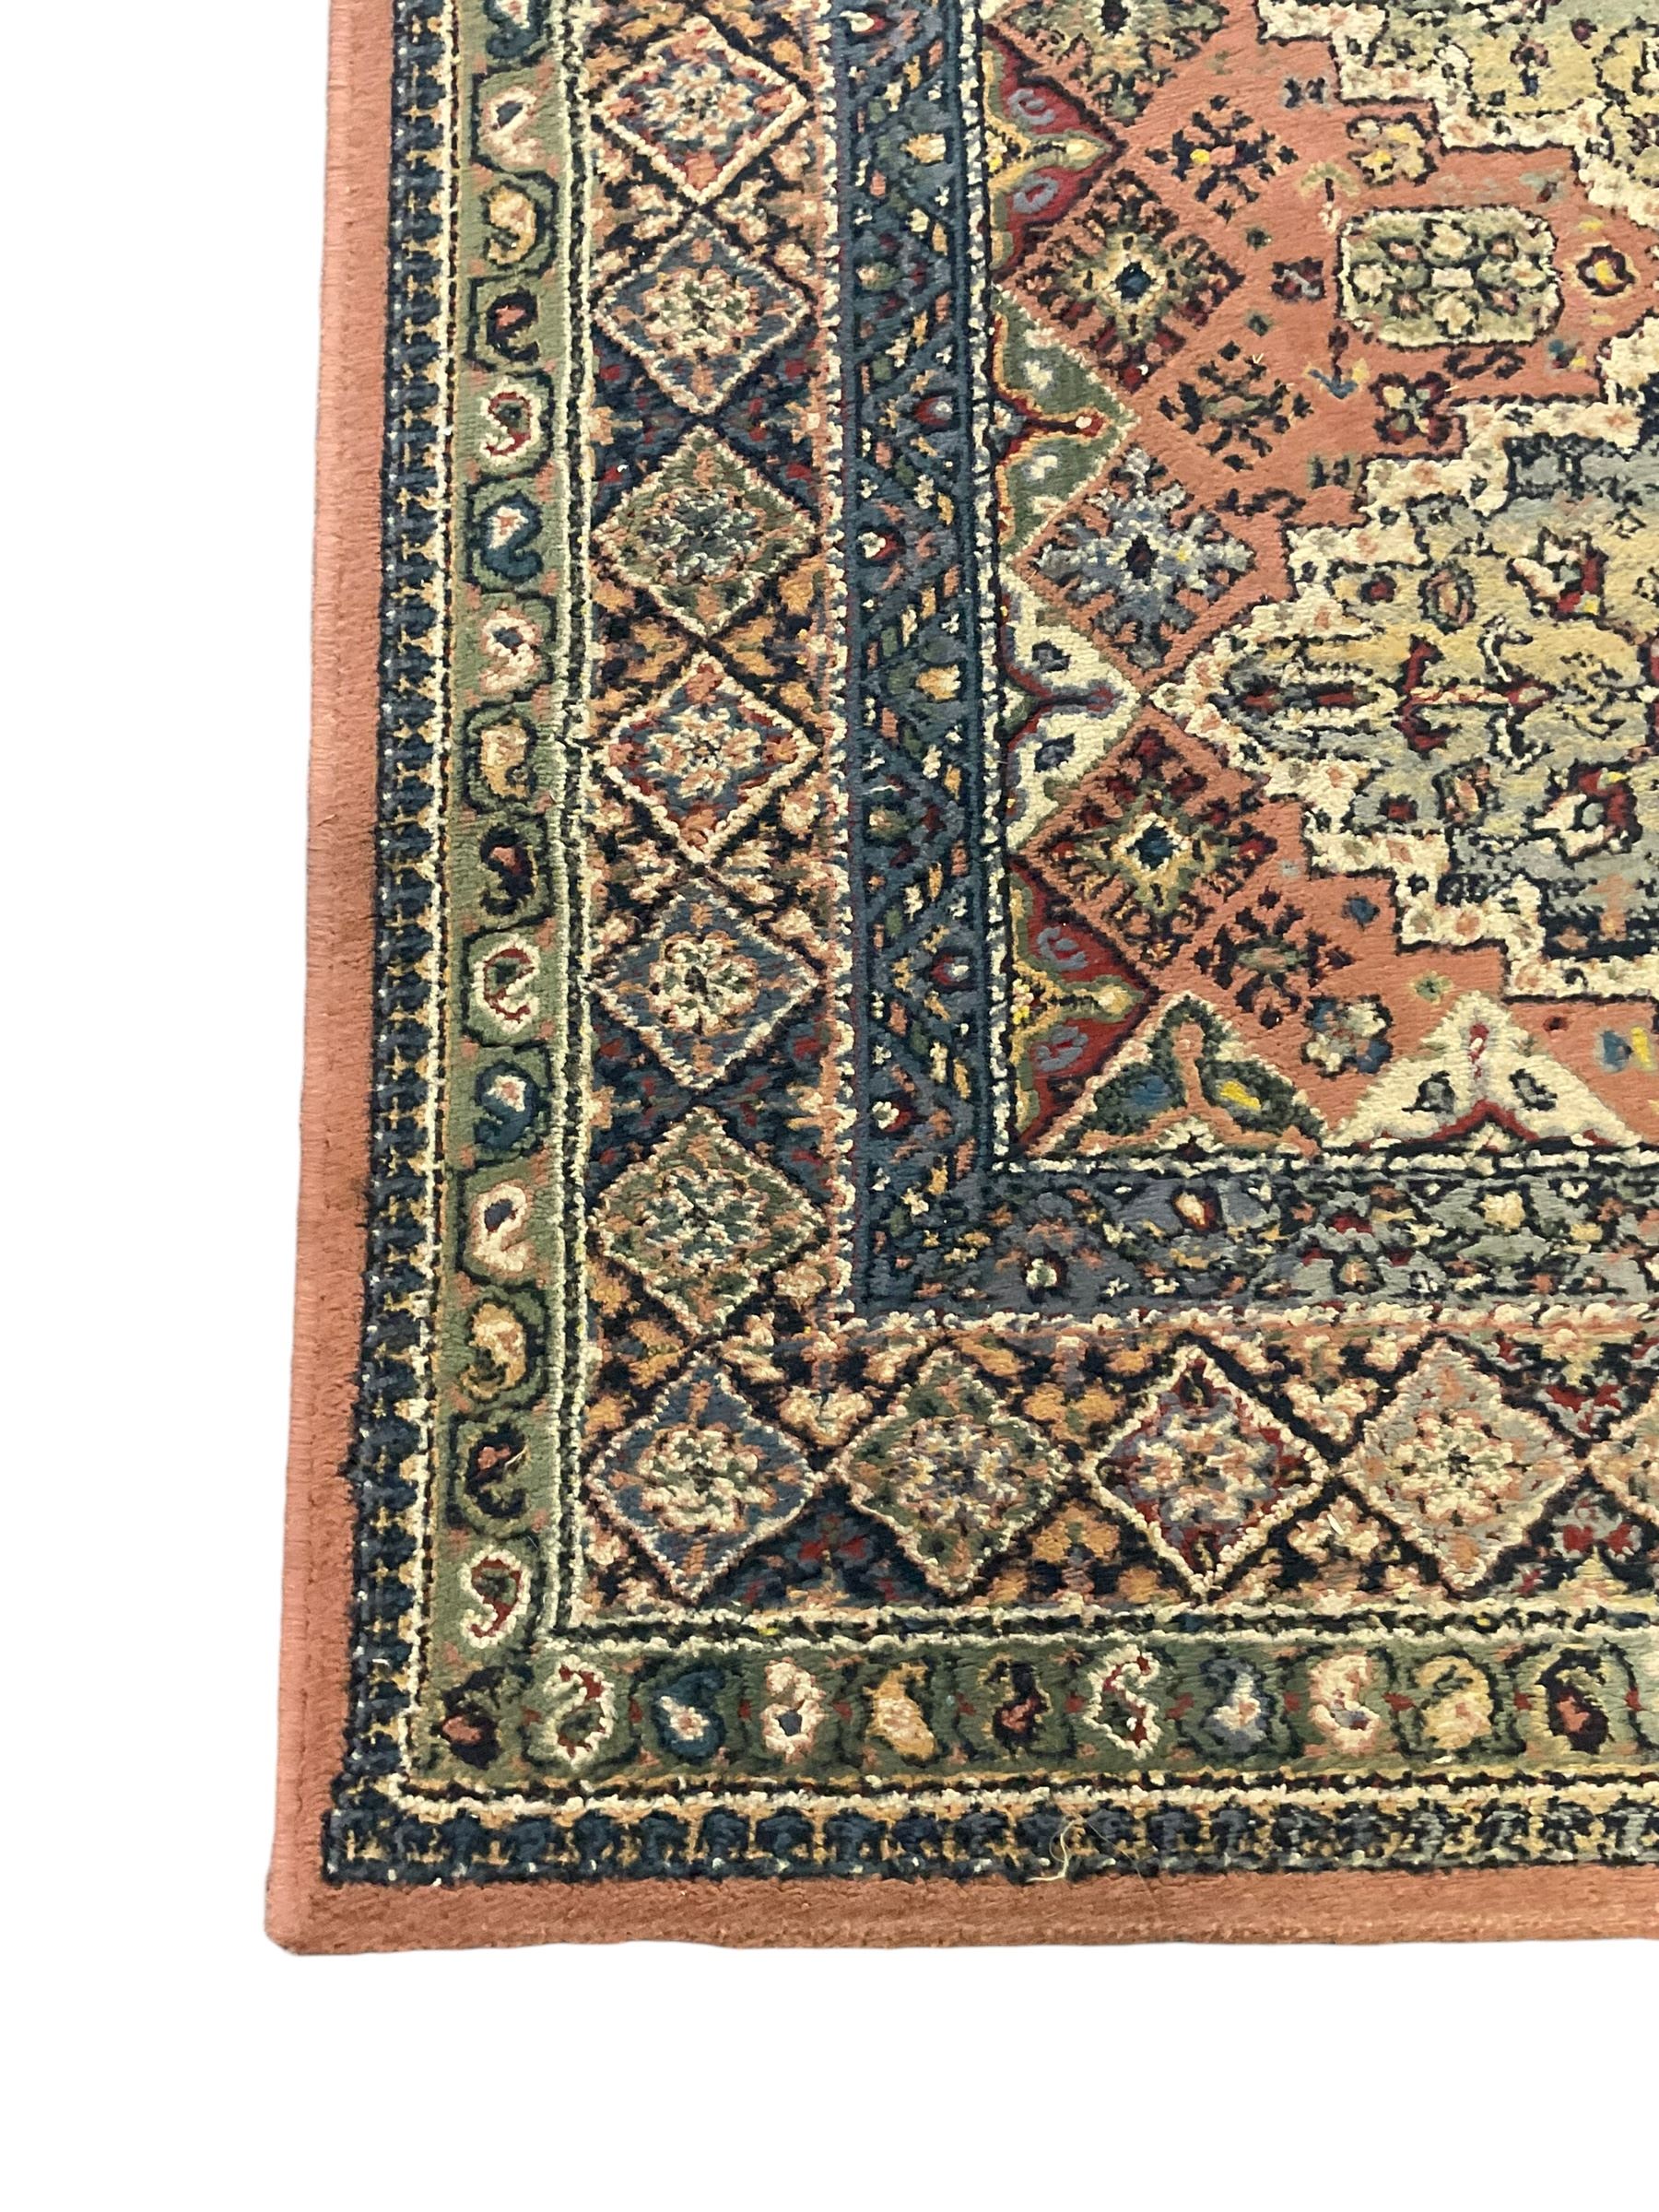 Persian design peach ground rug (169cm x 117cm); Chinese peach ground rug (187cm x 101cm) - Image 6 of 9